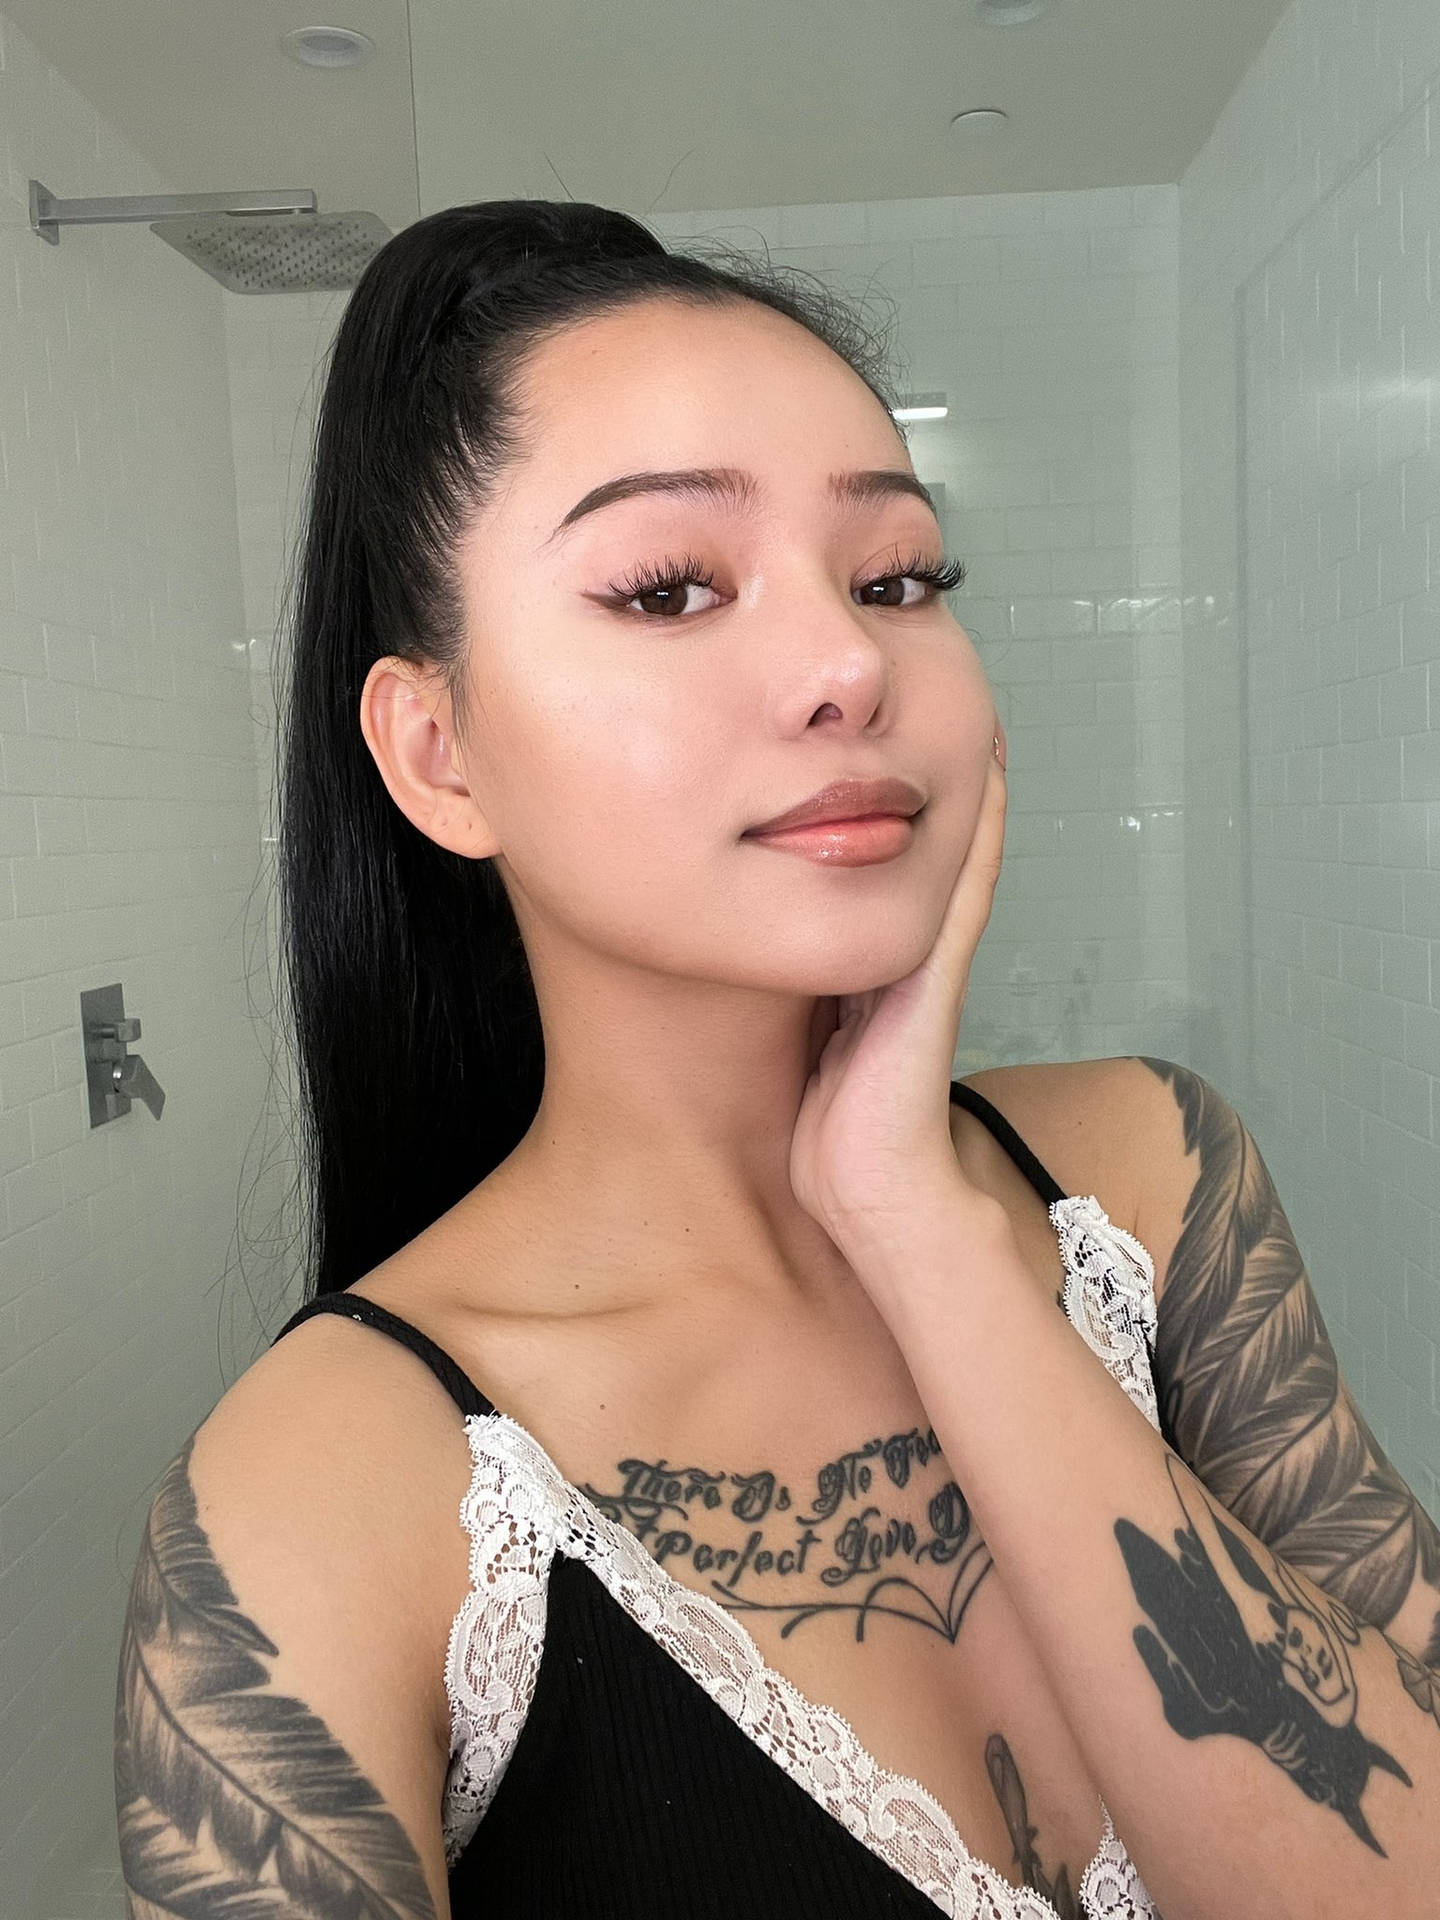 Filipino-american Bella Poarch